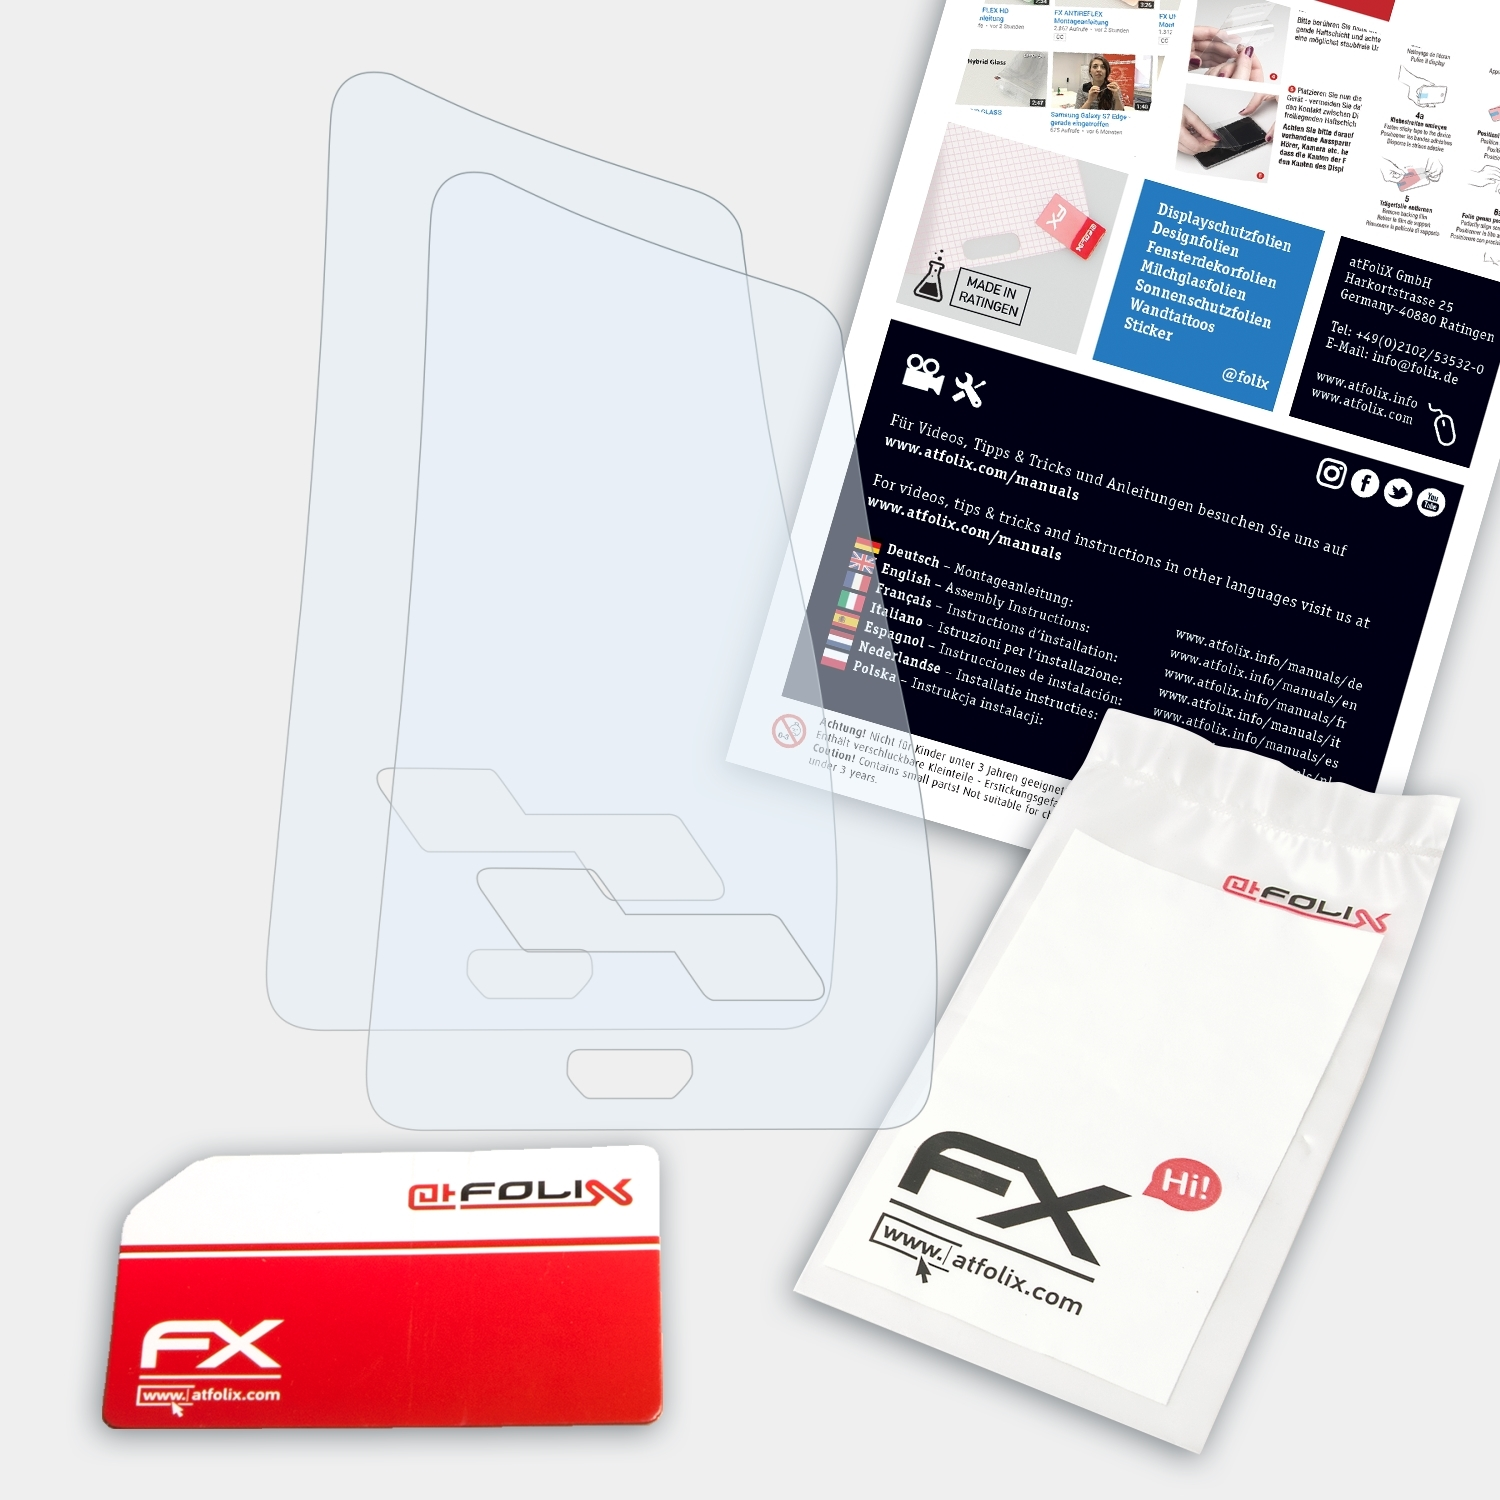 ATFOLIX 2x FX-Clear Displayschutz(für Mag (Right Smok Handed)) Kit